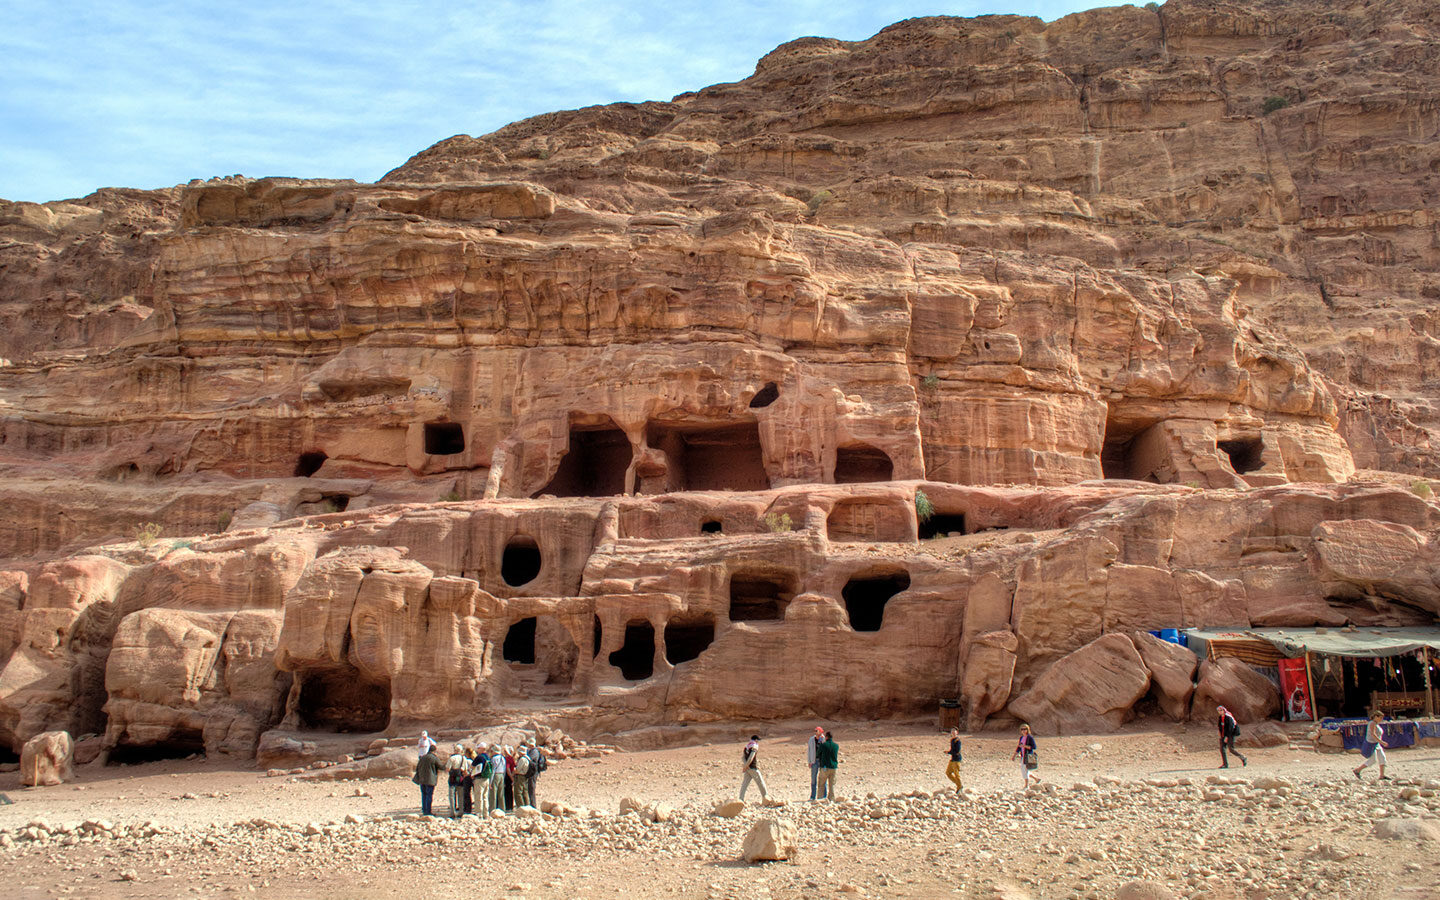 Tombs carved into the rock at Petra, Jordan